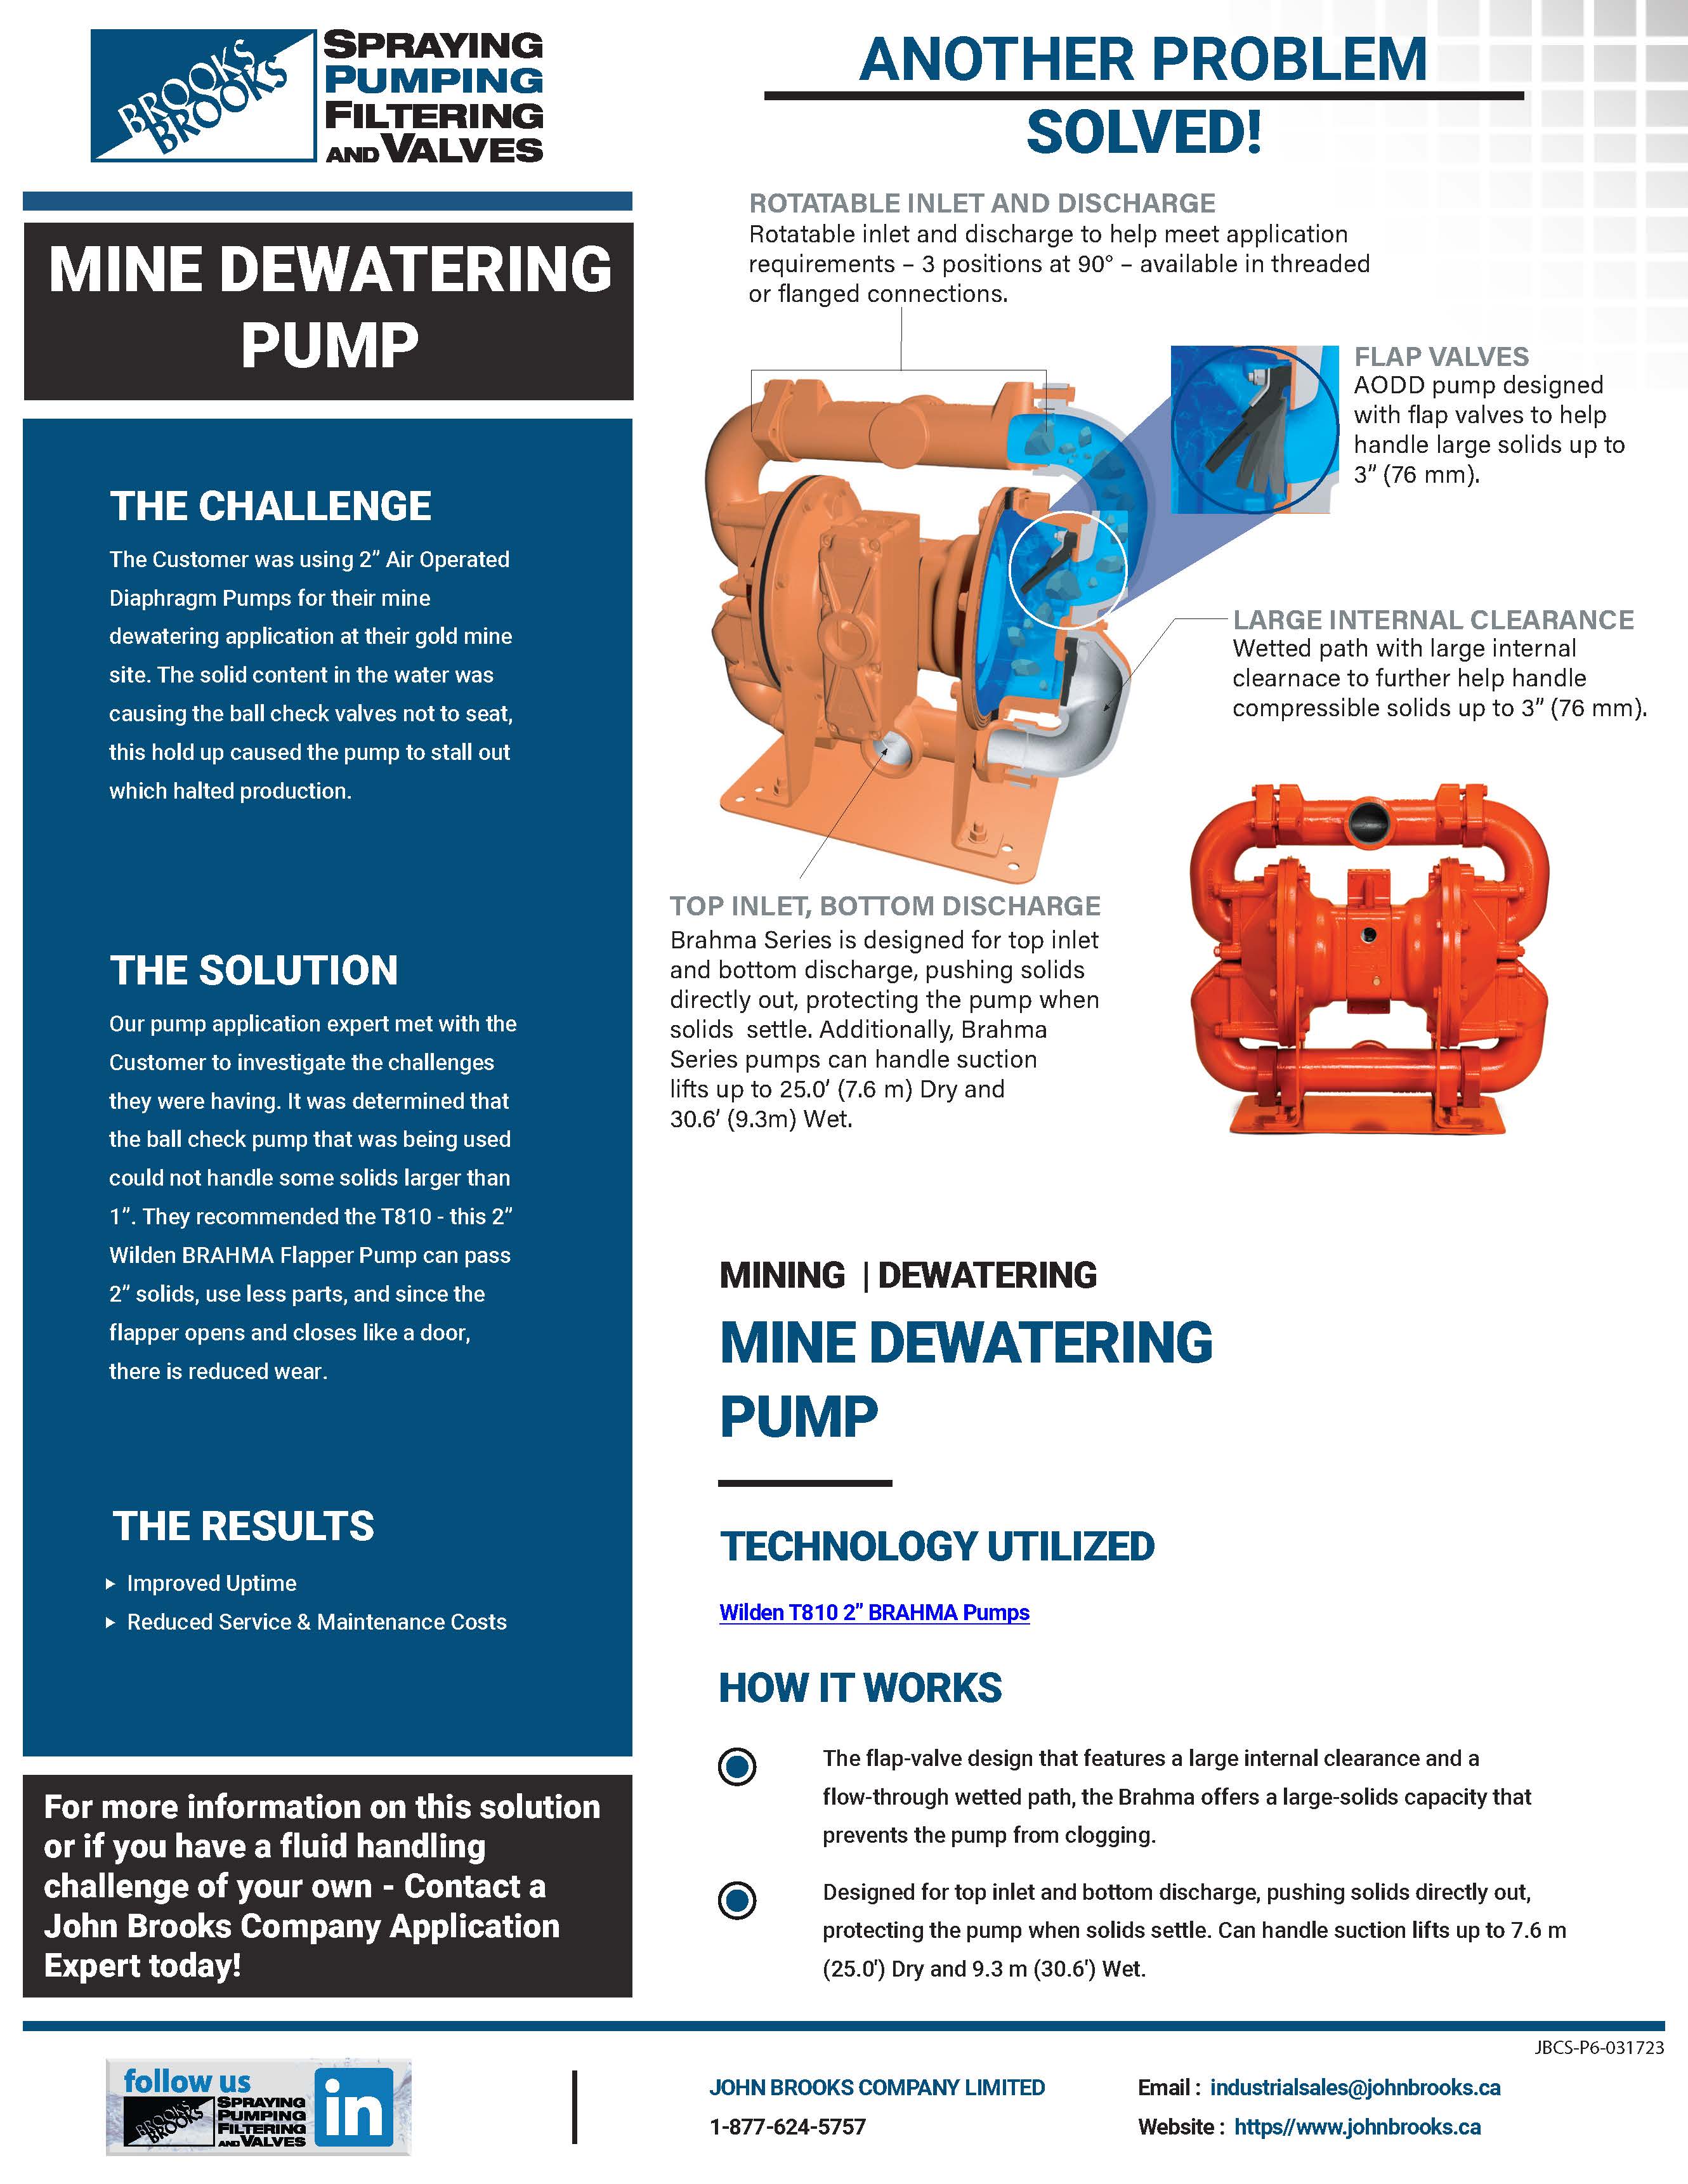 Wilden Brahma Pumps for Mine Dewatering at Gold Mine Site